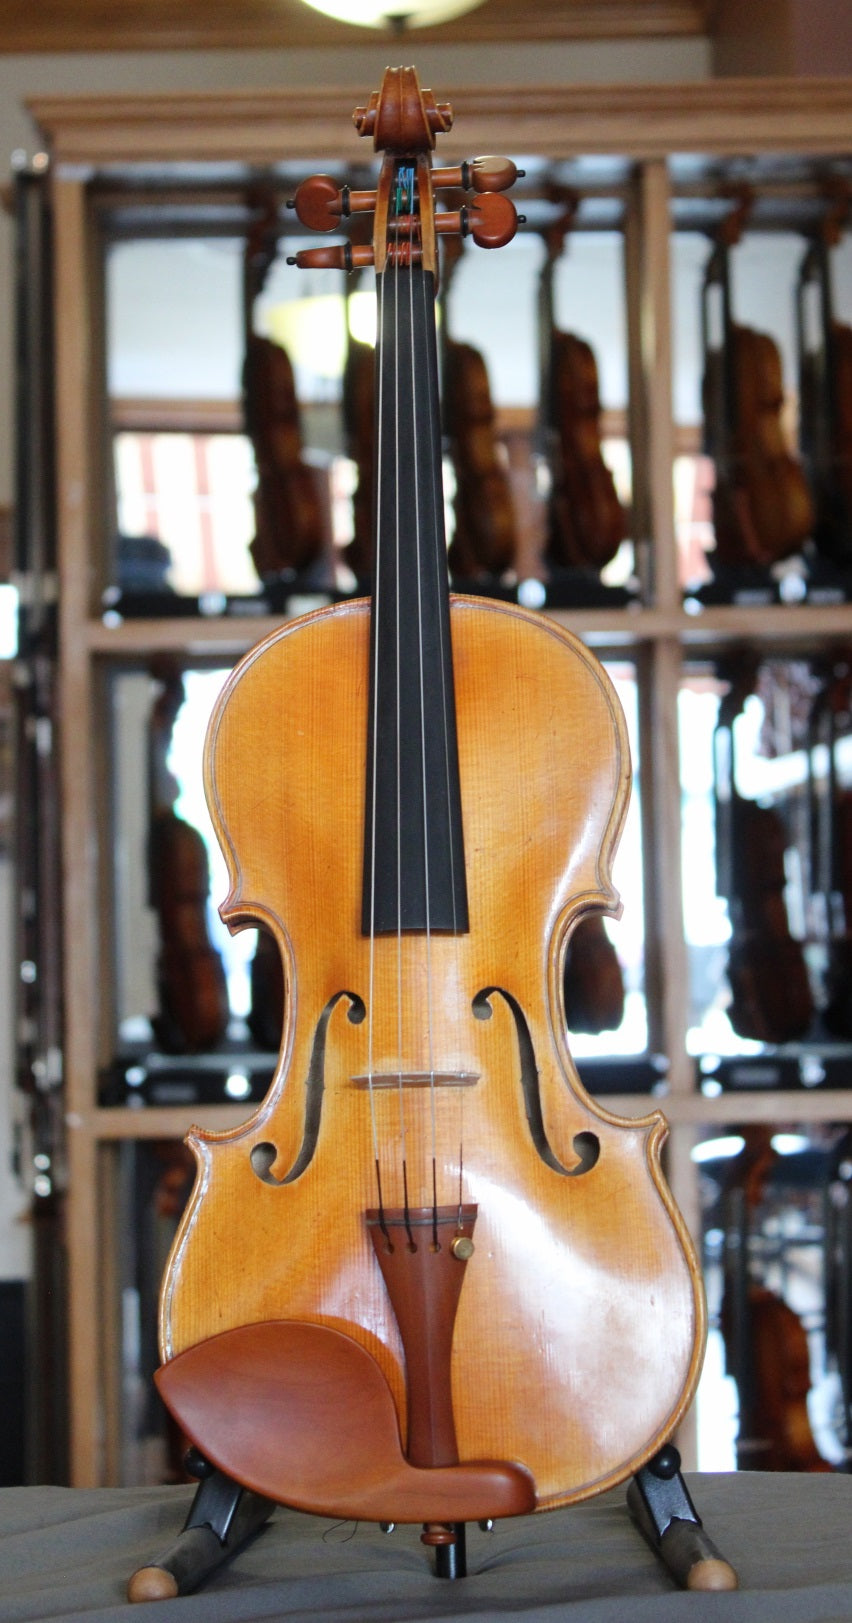 Anton Krutz Violin - 1997